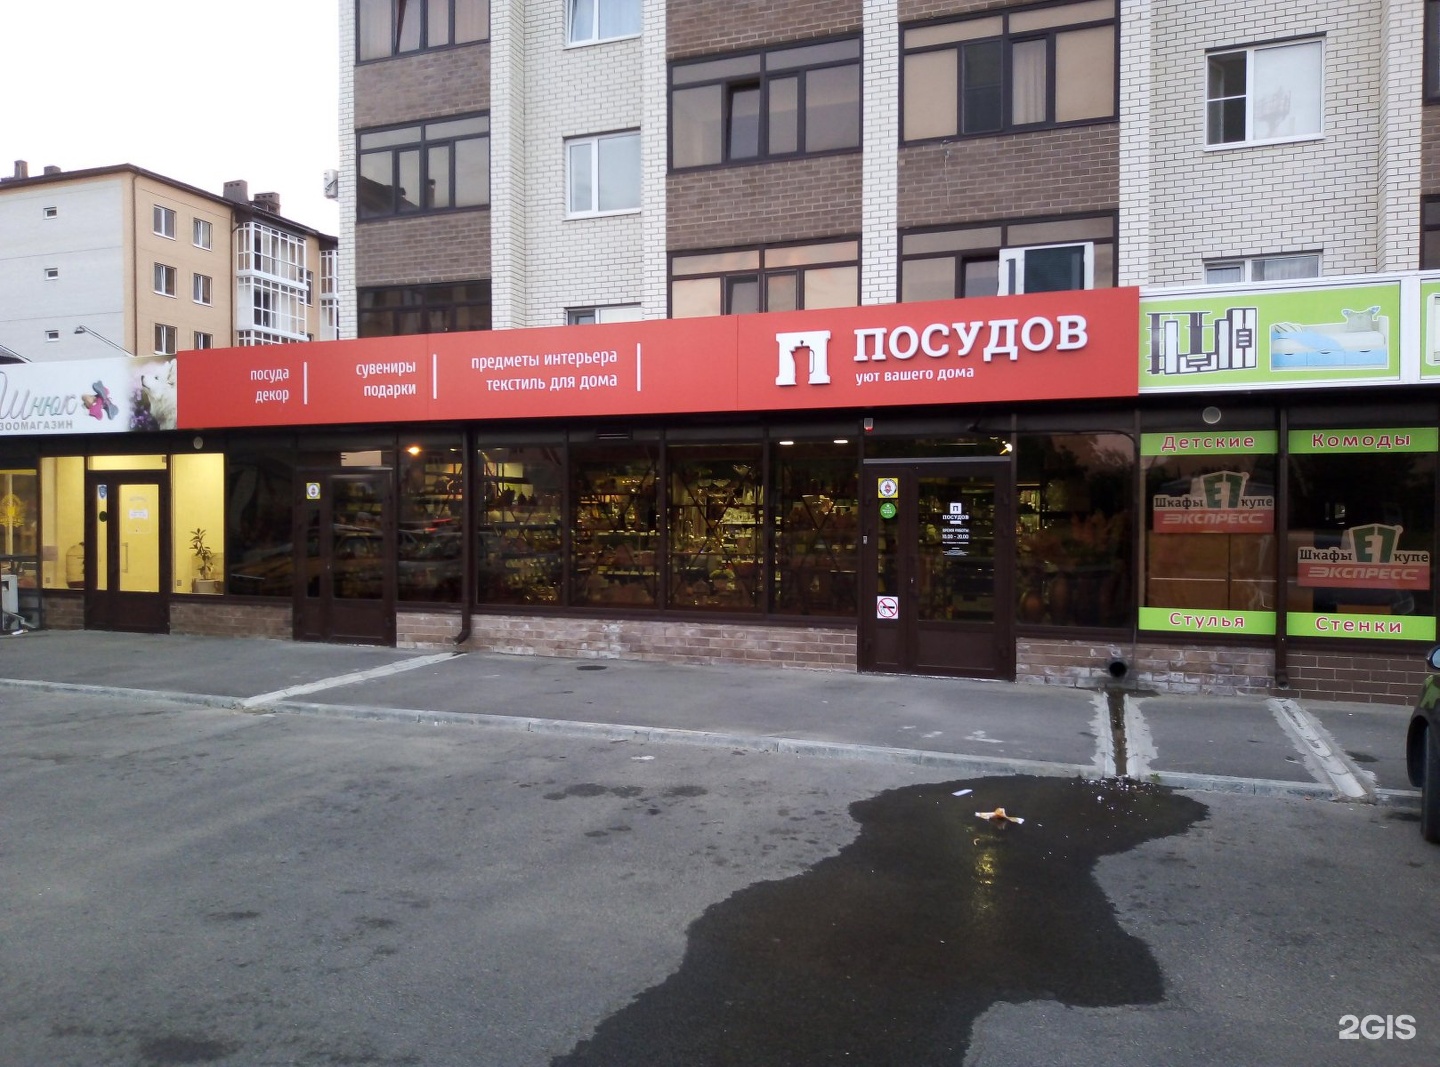 Магазин Посудов Ставрополь